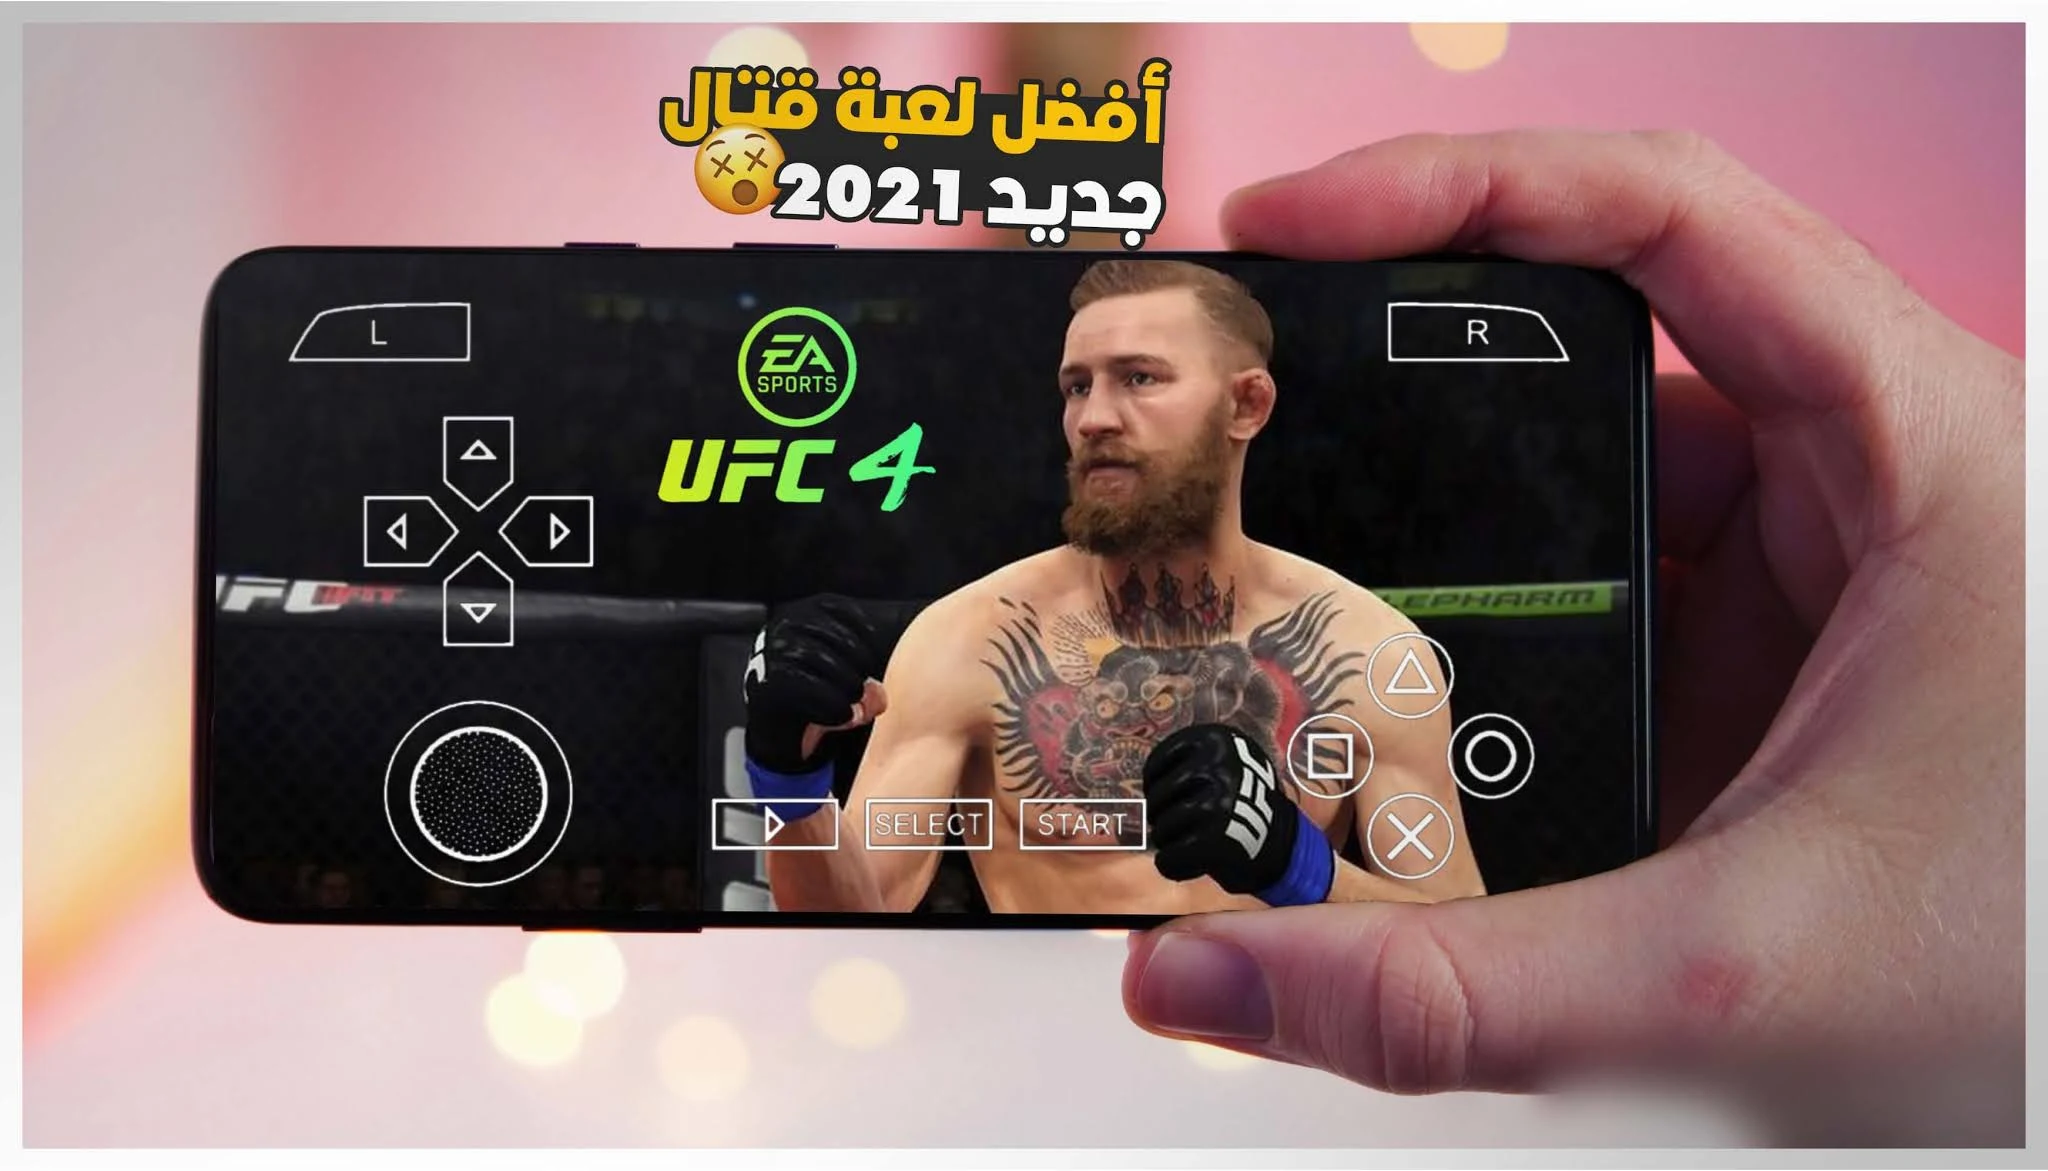 تحميل لعبة UFC 4 psp للاندرويد مضغوطة لمحاكي ppsspp من ميديافاير بحجم ufc 4 ppsspp android | 100MB